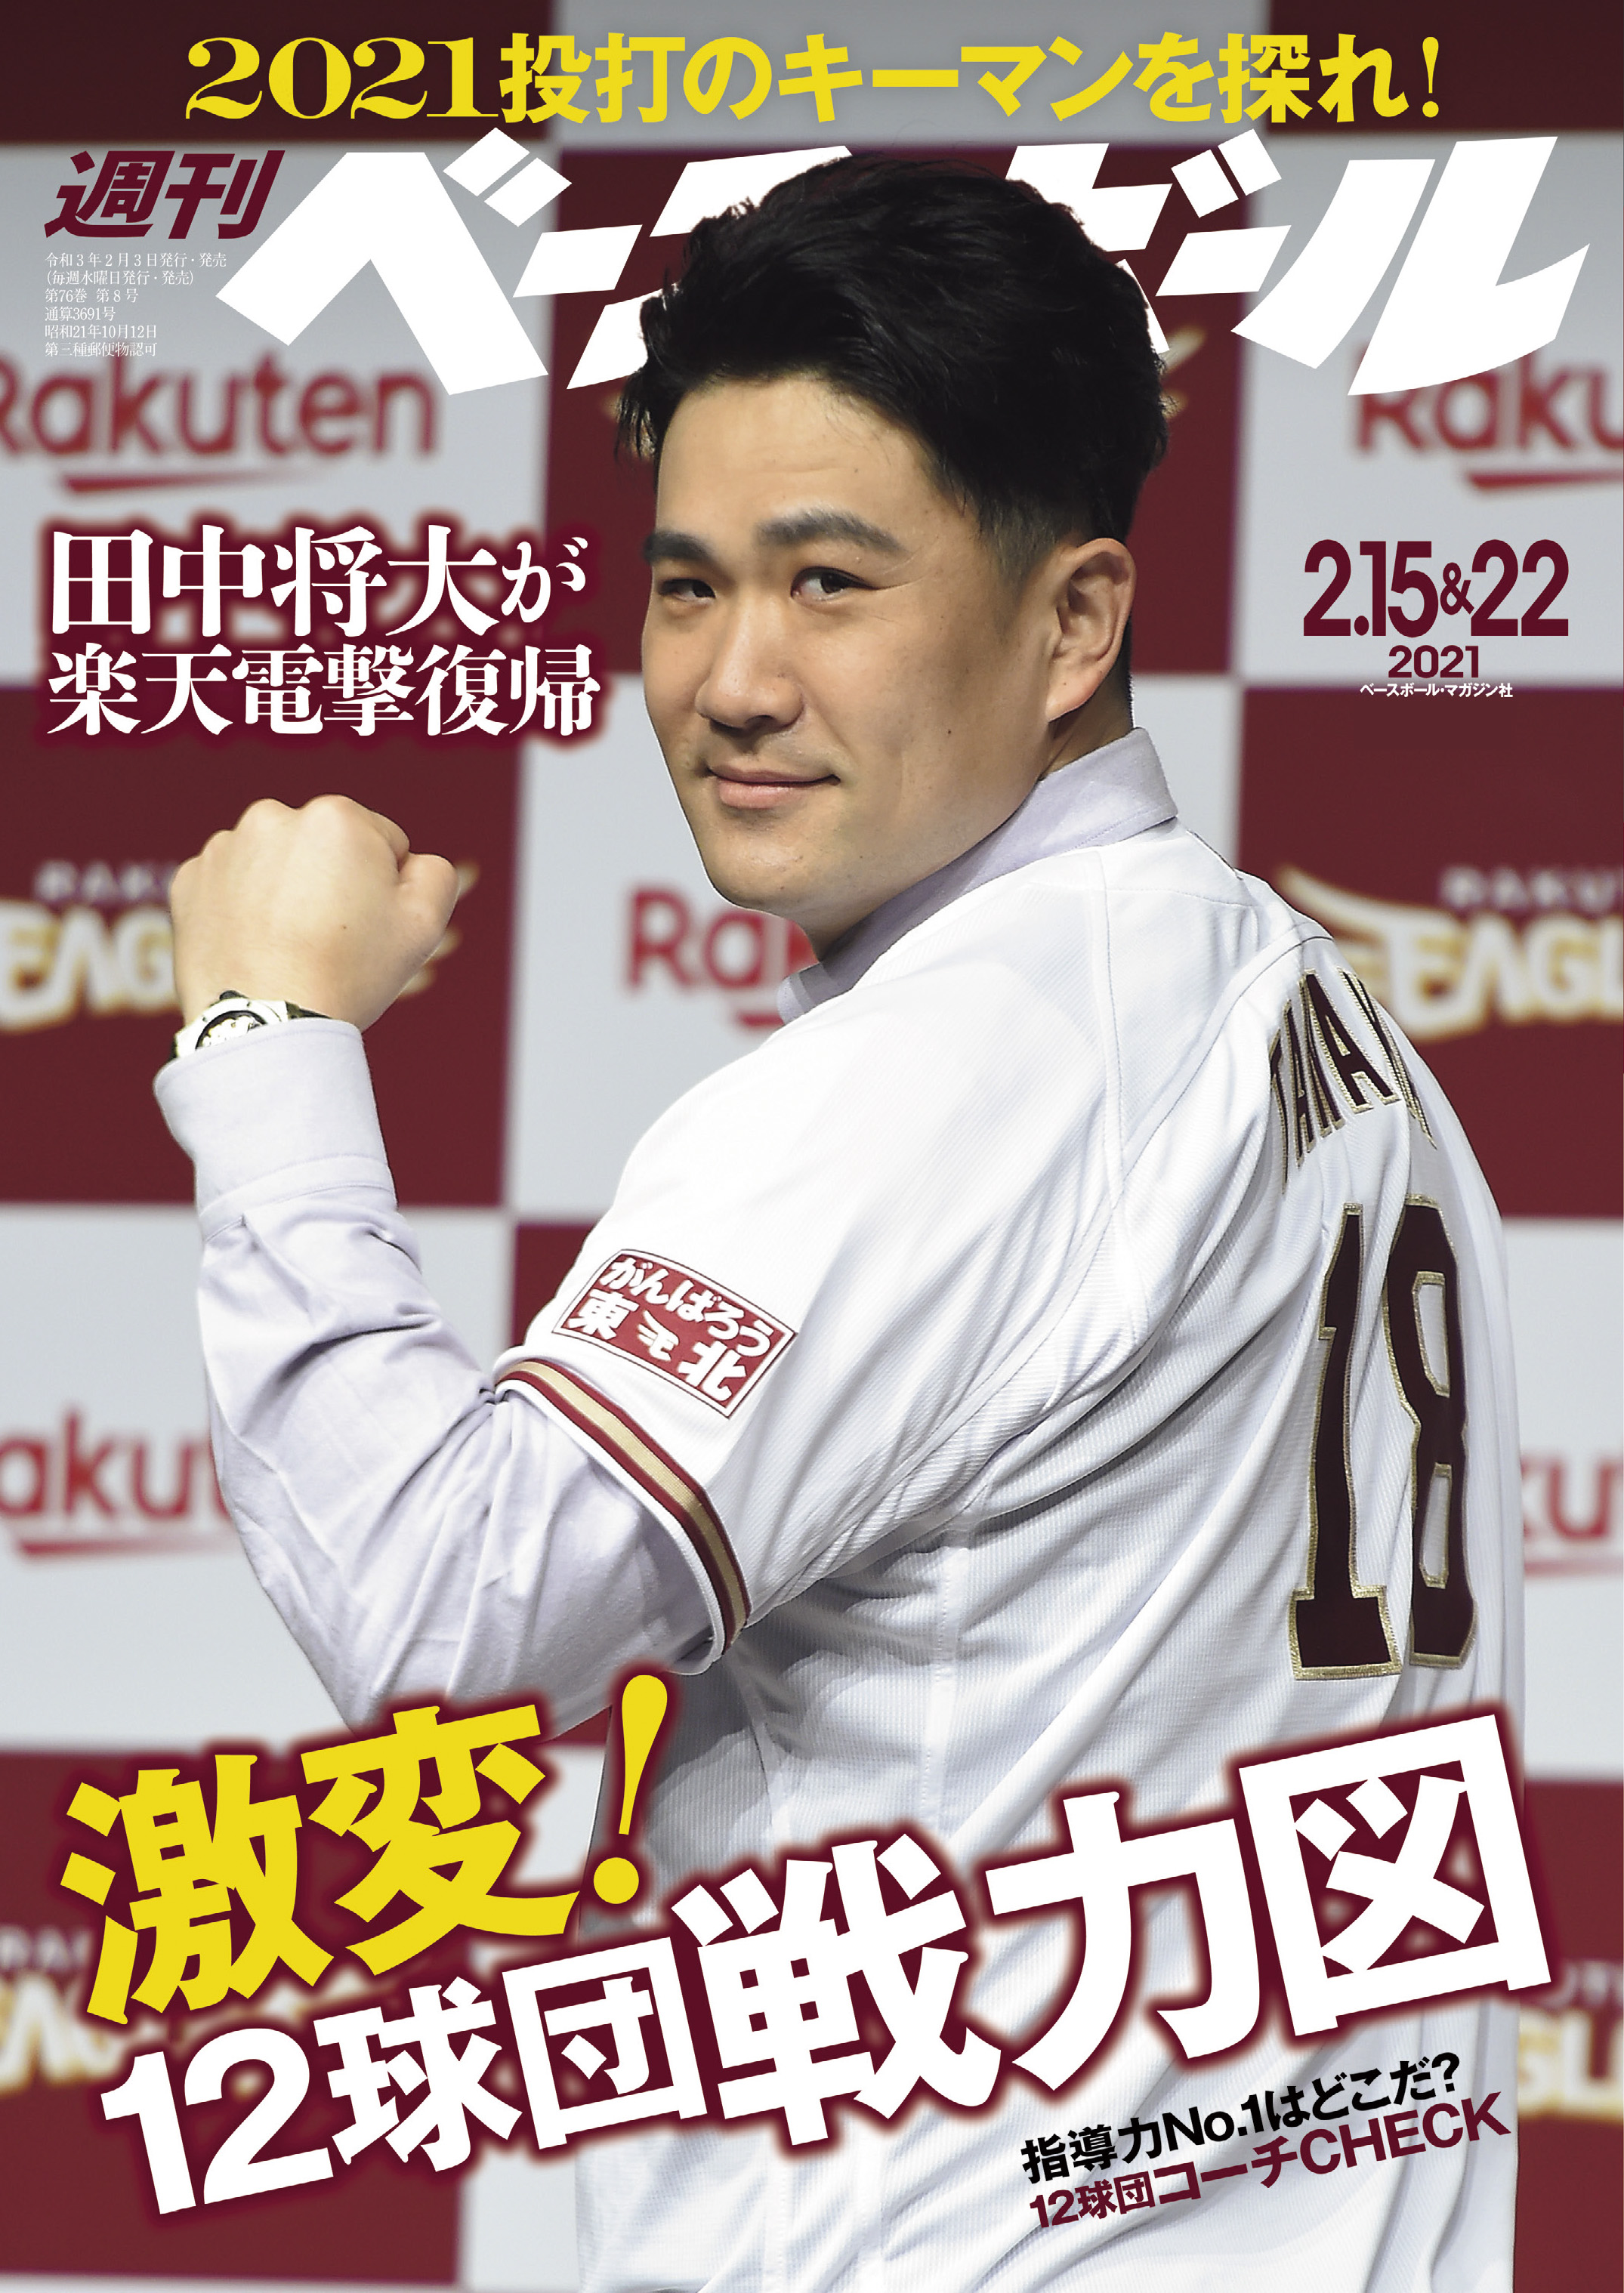 BBM 2021 2nd 斎藤和巳 パック表紙記載カード - スポーツ選手